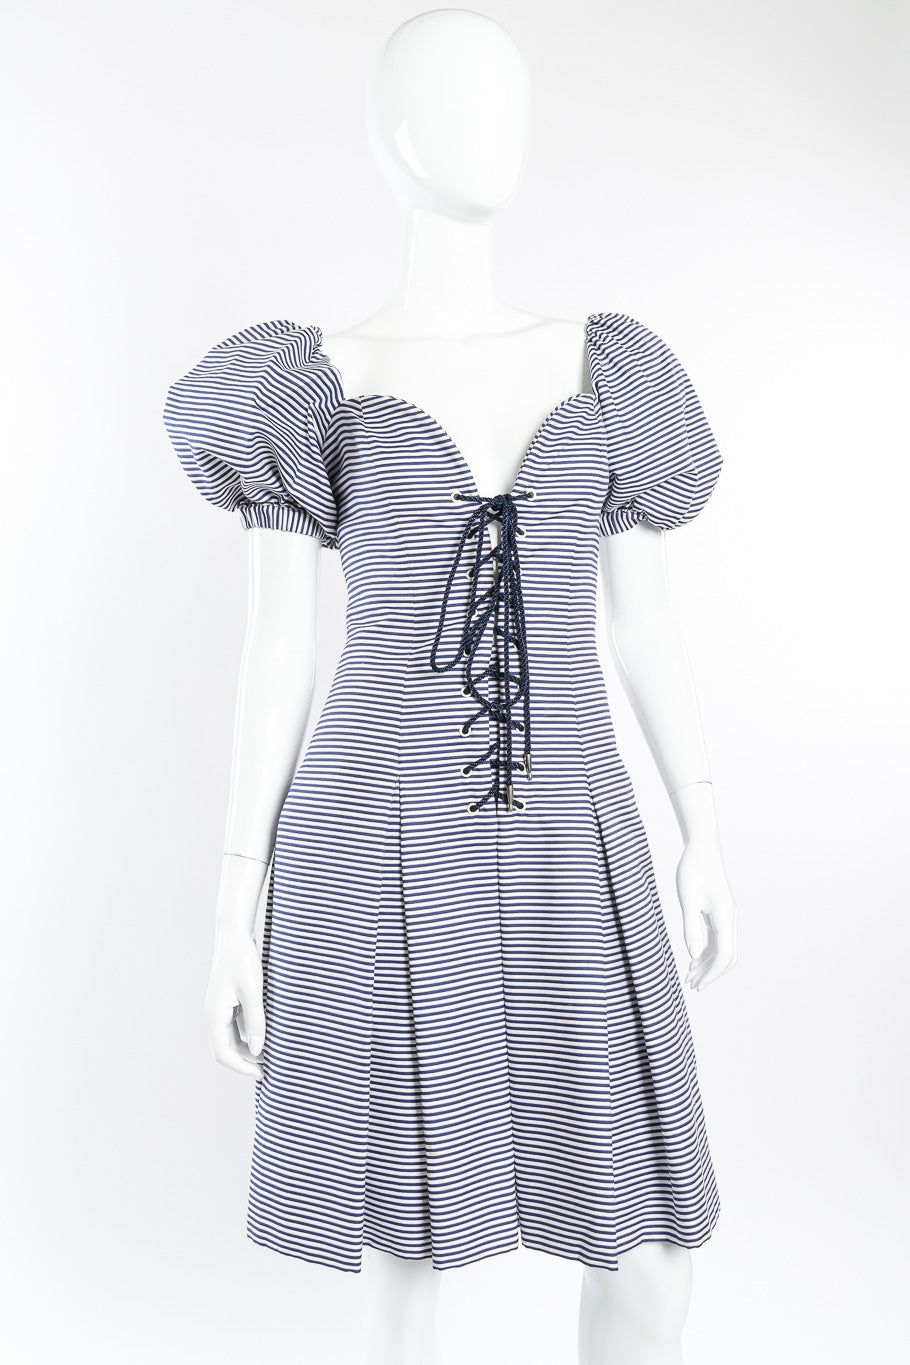 Vintage Yves Saint Laurent Sailor Stripe Corset Dress on mannequin front view @recessla